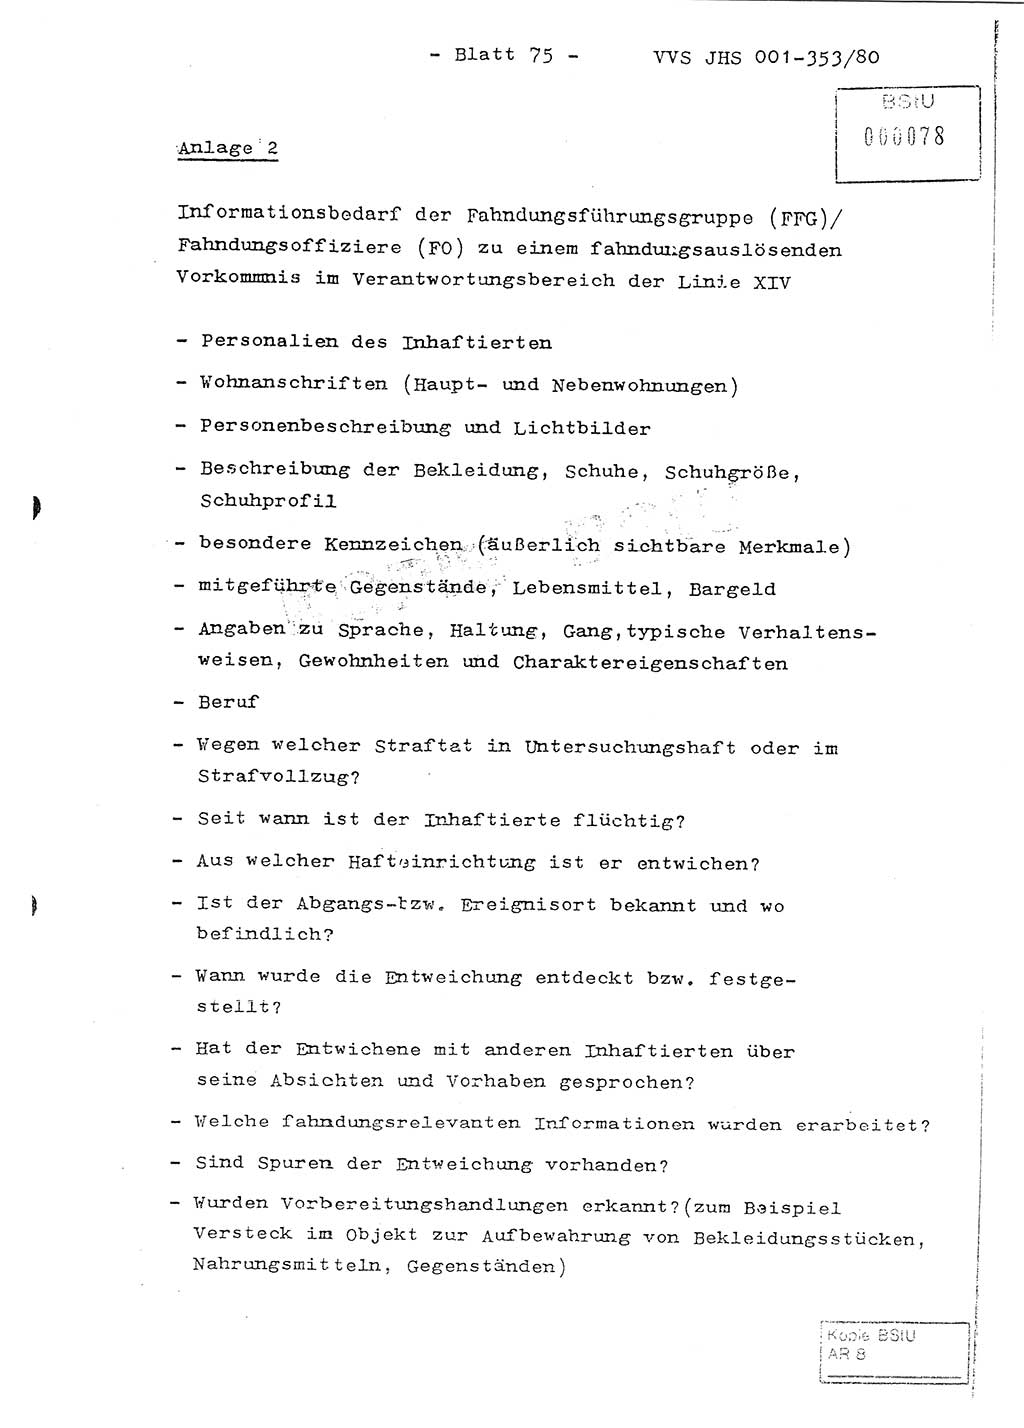 Diplomarbeit Hauptmann Joachim Klaumünzner (Abt. ⅩⅣ), Ministerium für Staatssicherheit (MfS) [Deutsche Demokratische Republik (DDR)], Juristische Hochschule (JHS), Vertrauliche Verschlußsache (VVS) o001-353/80, Potsdam 1980, Blatt 75 (Dipl.-Arb. MfS DDR JHS VVS o001-353/80 1980, Bl. 75)